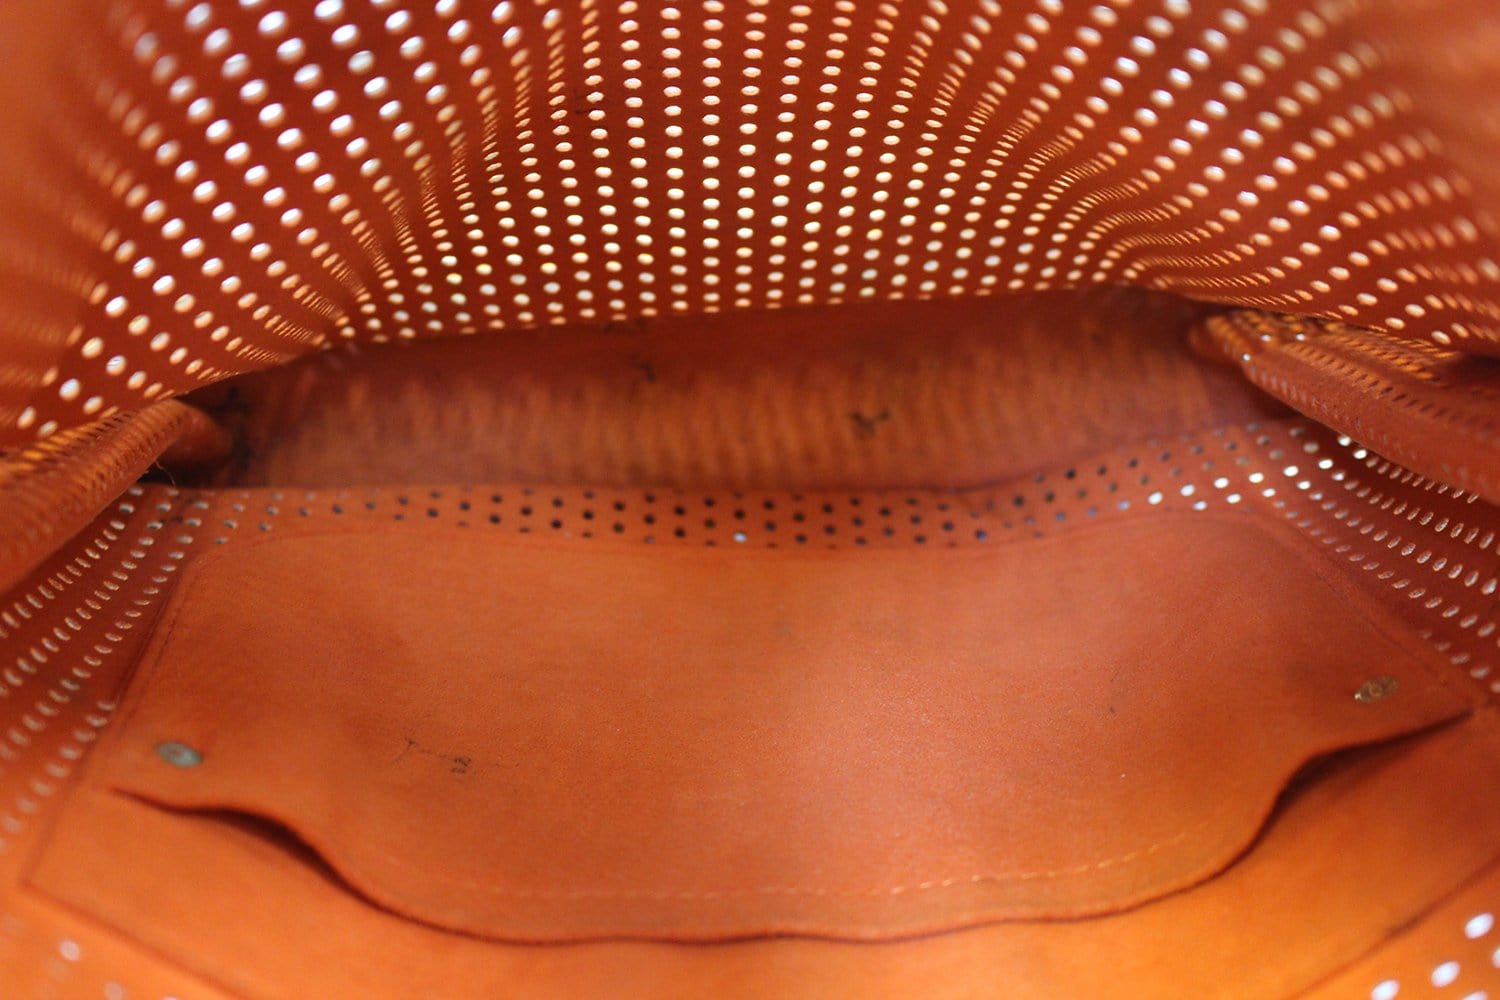 LOUIS VUITTON Monogram Perfo Musette Shoulder Bag Orange M95174 LV